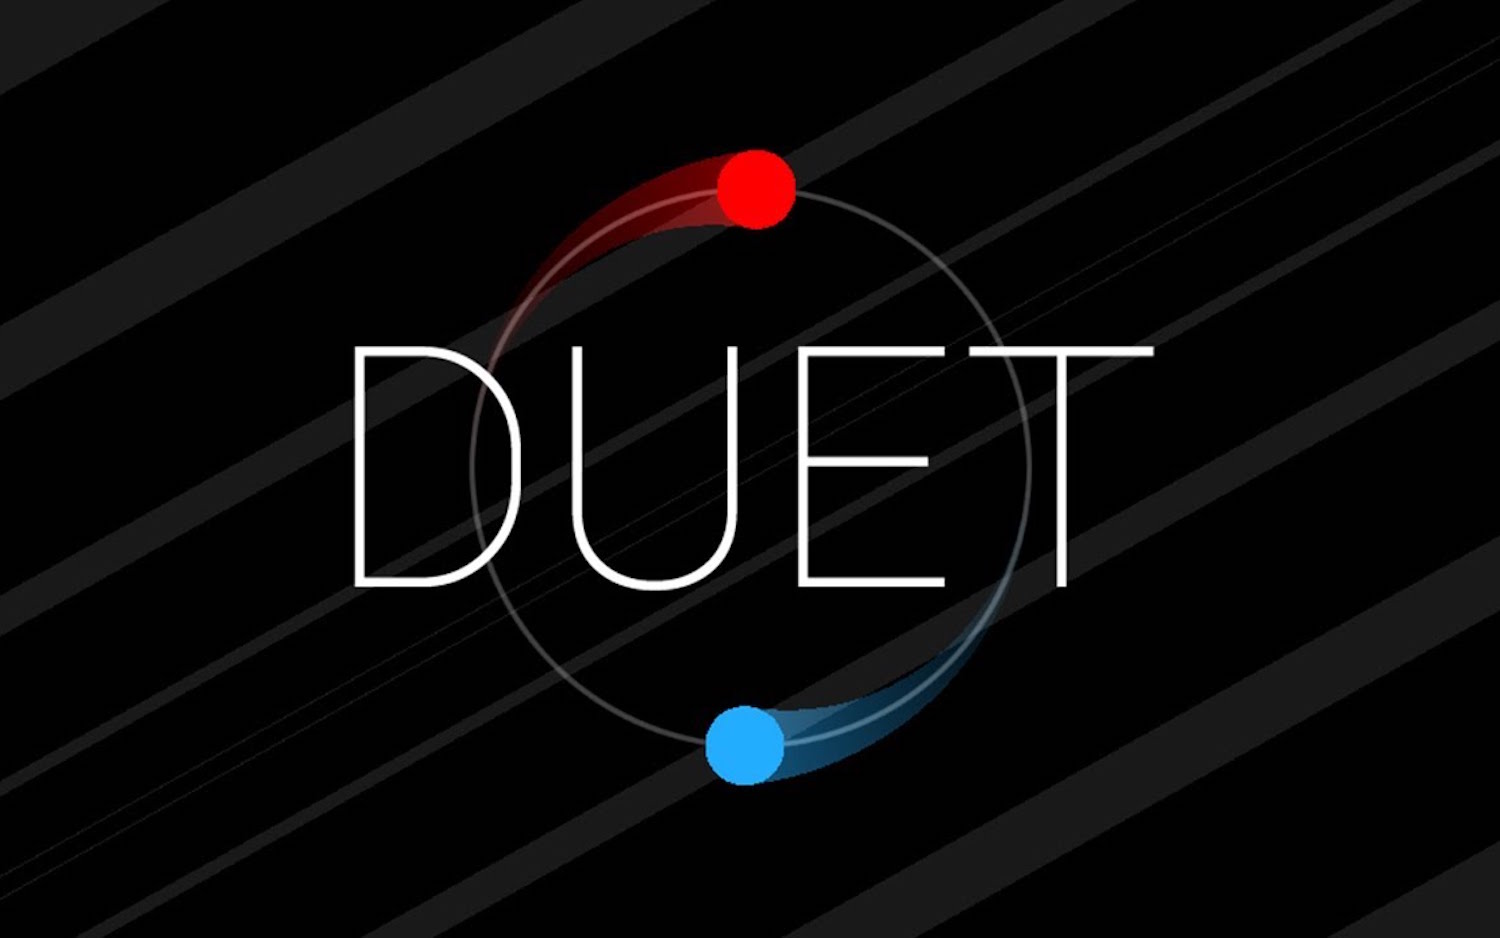 لعبة Duet للاندرويد و iOS